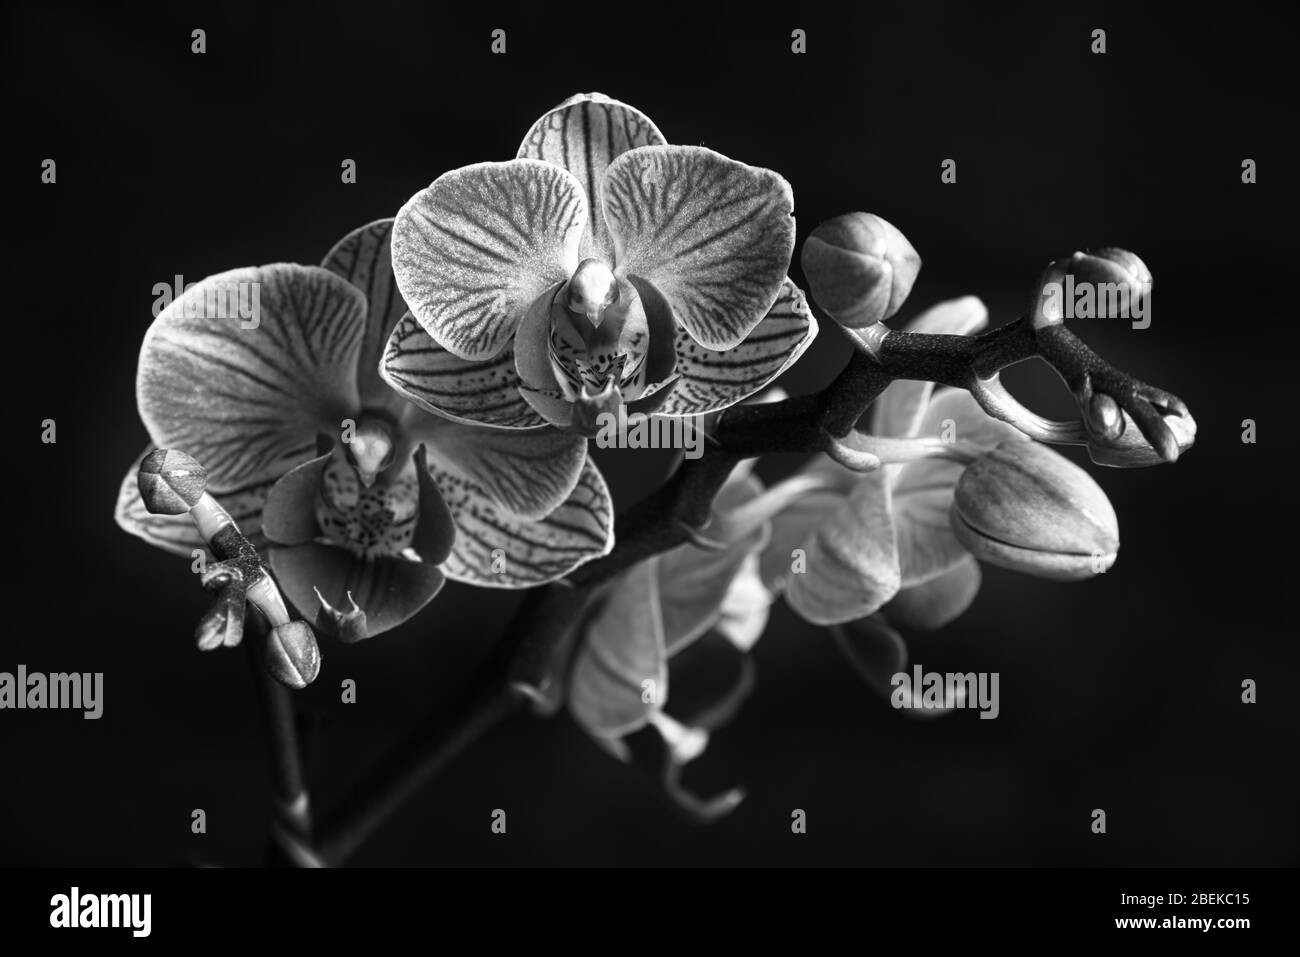 Phaleanopsis bianco e nero su sfondo scuro. Immagine in bianco e nero di fiori di orchidea Foto Stock